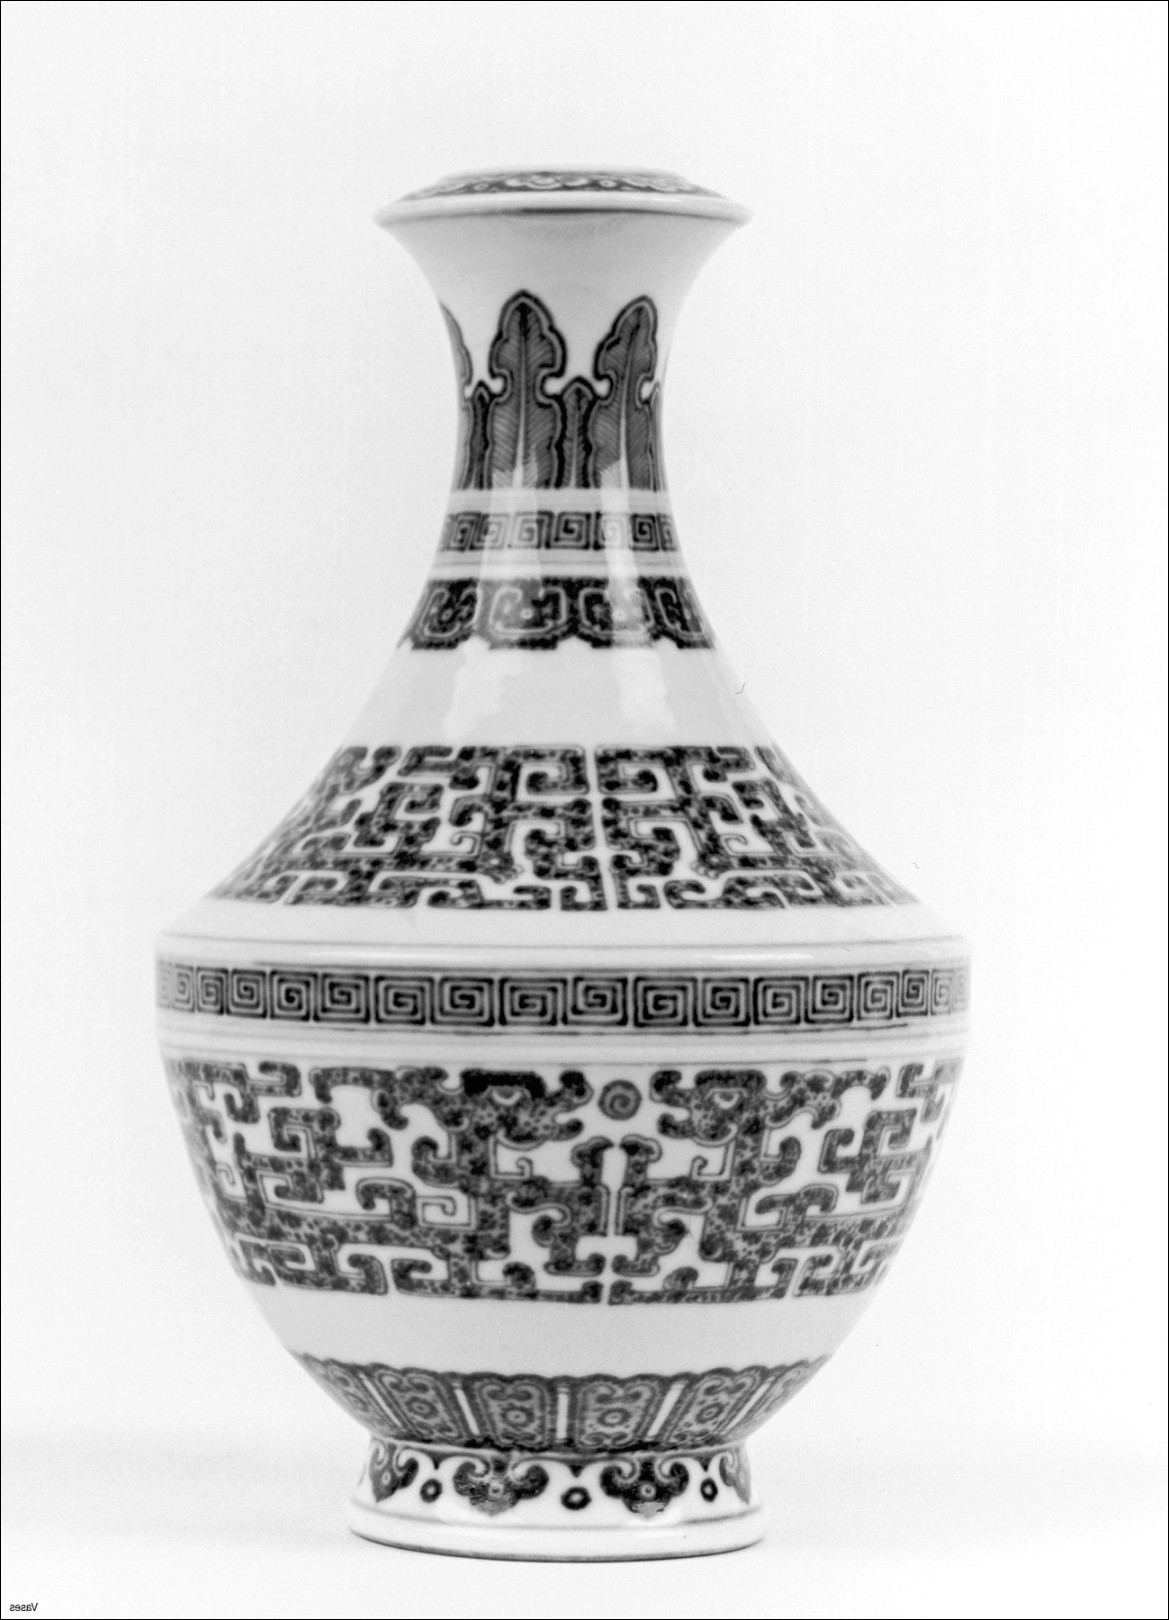 15 Lovely Art Deco Vase 2024 free download art deco vase of japanese for art images japan world web senryaku info with regard to 5053h vases vase designs download image i 0d